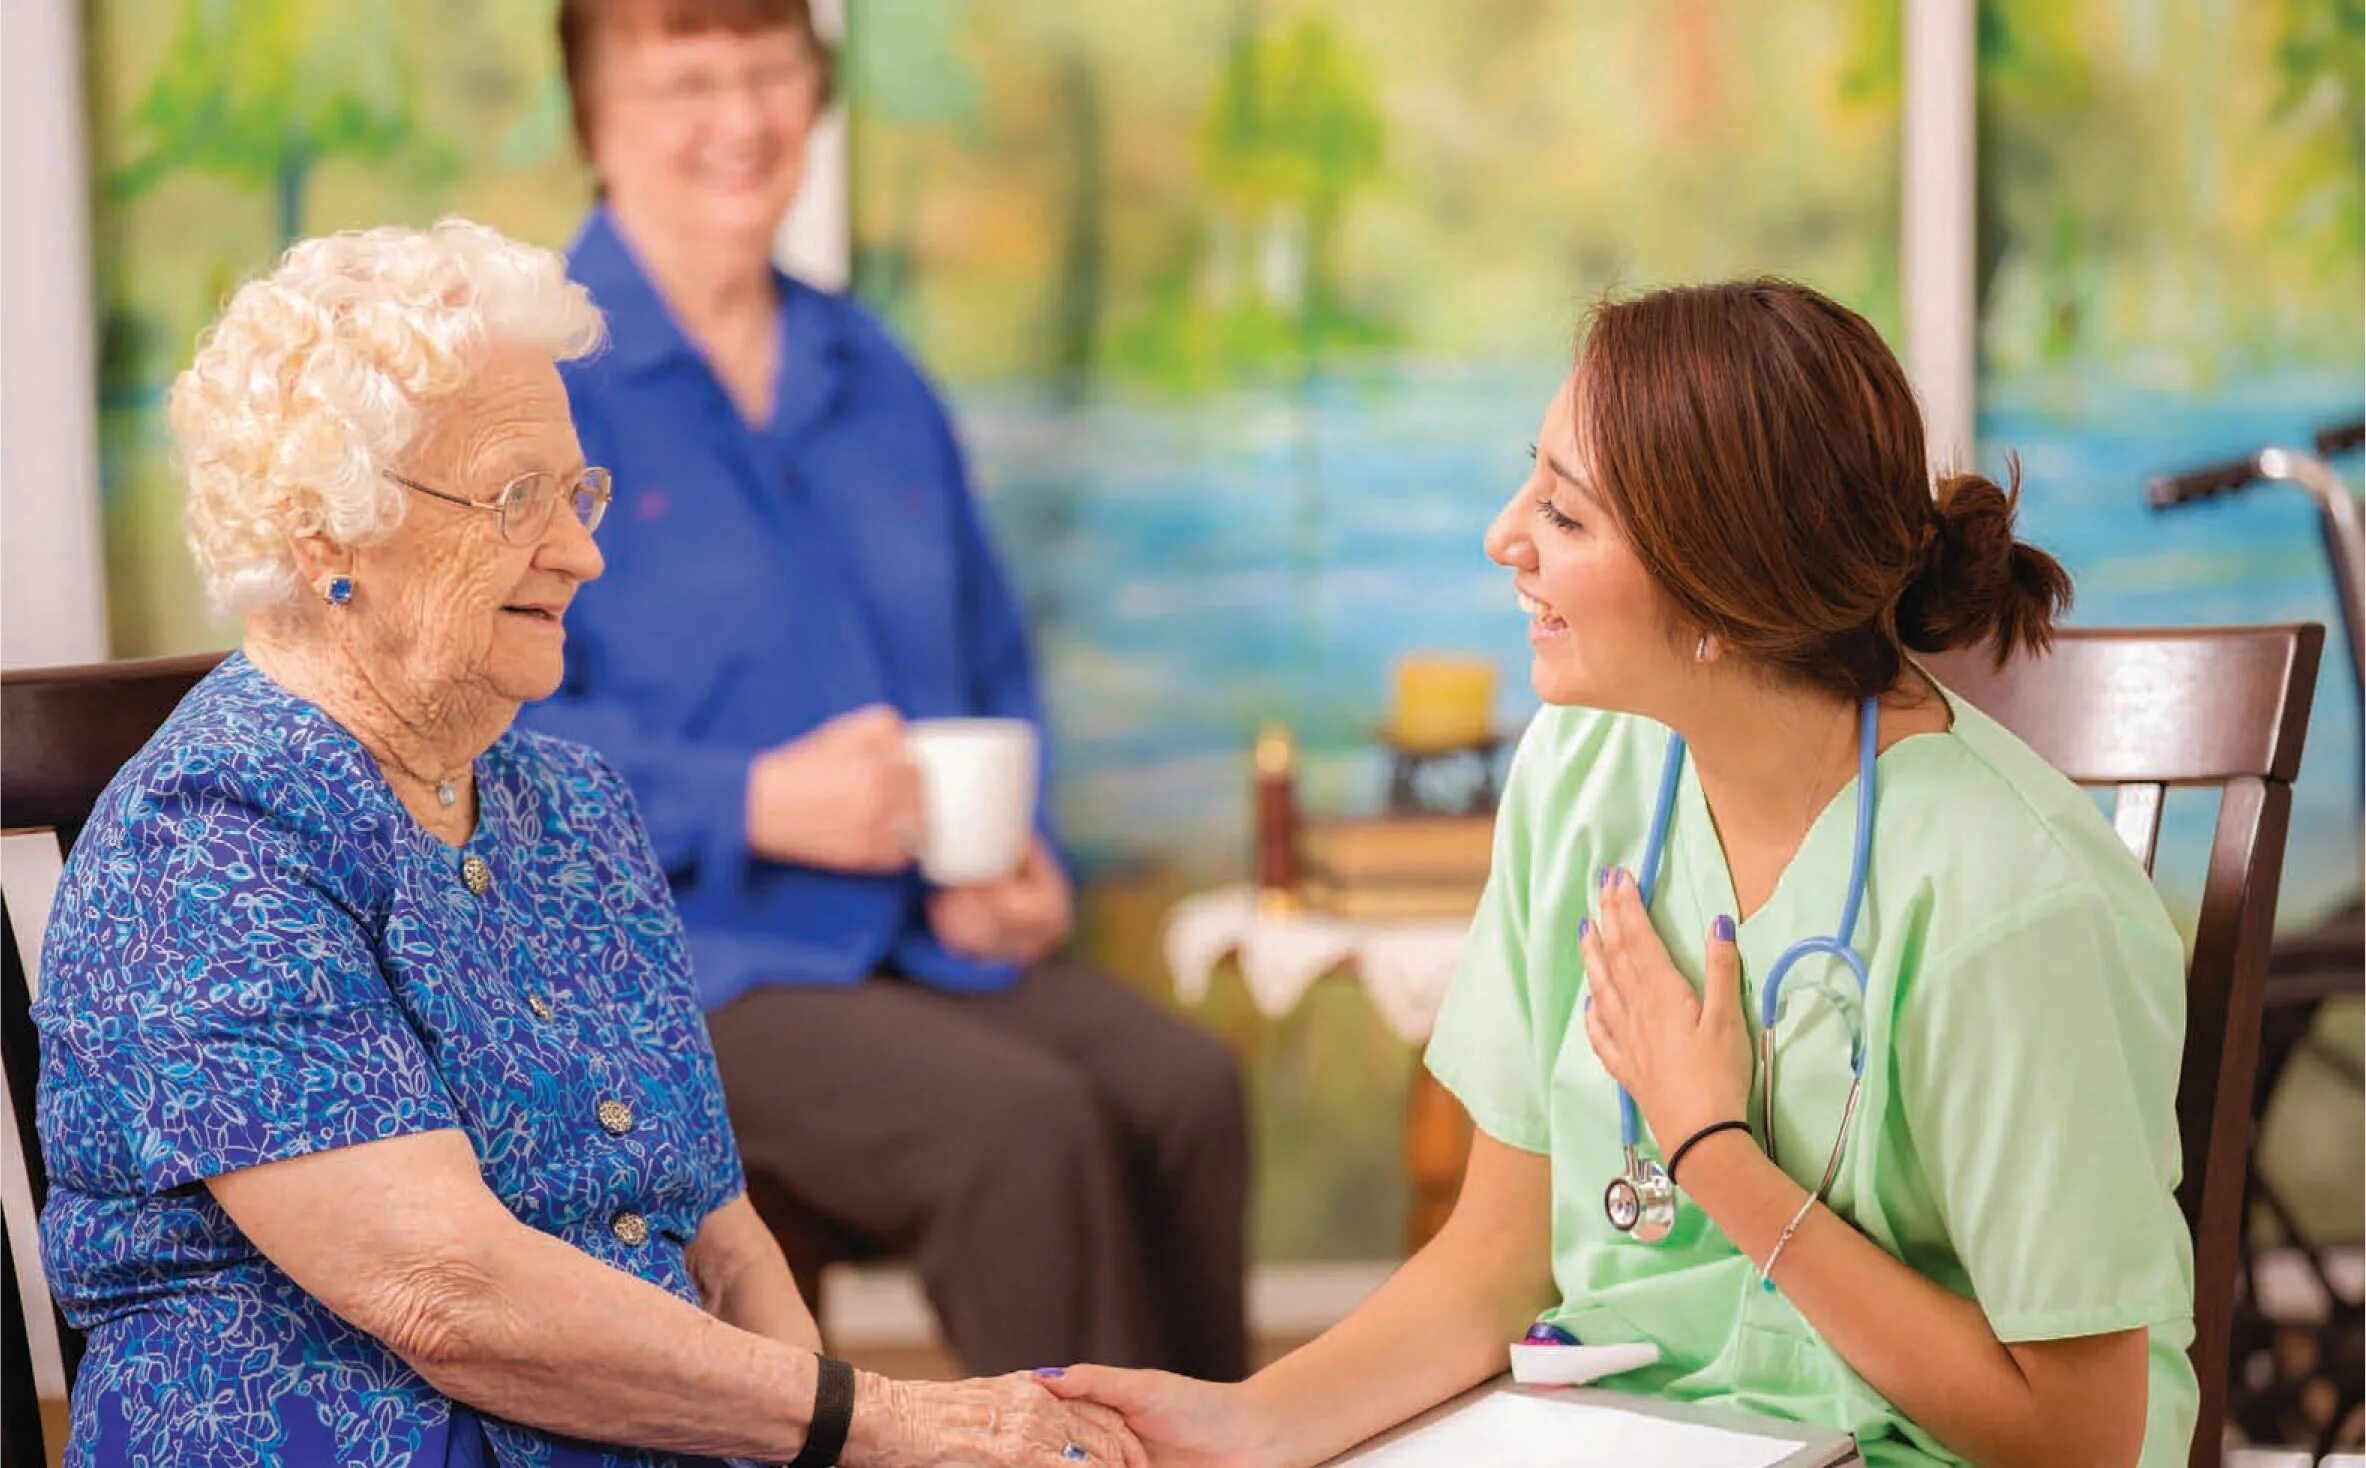 Беседа с пожилым человеком. Пожилые люди. Общение с пожилыми людьми. Пациенты пожилого возраста. Social women